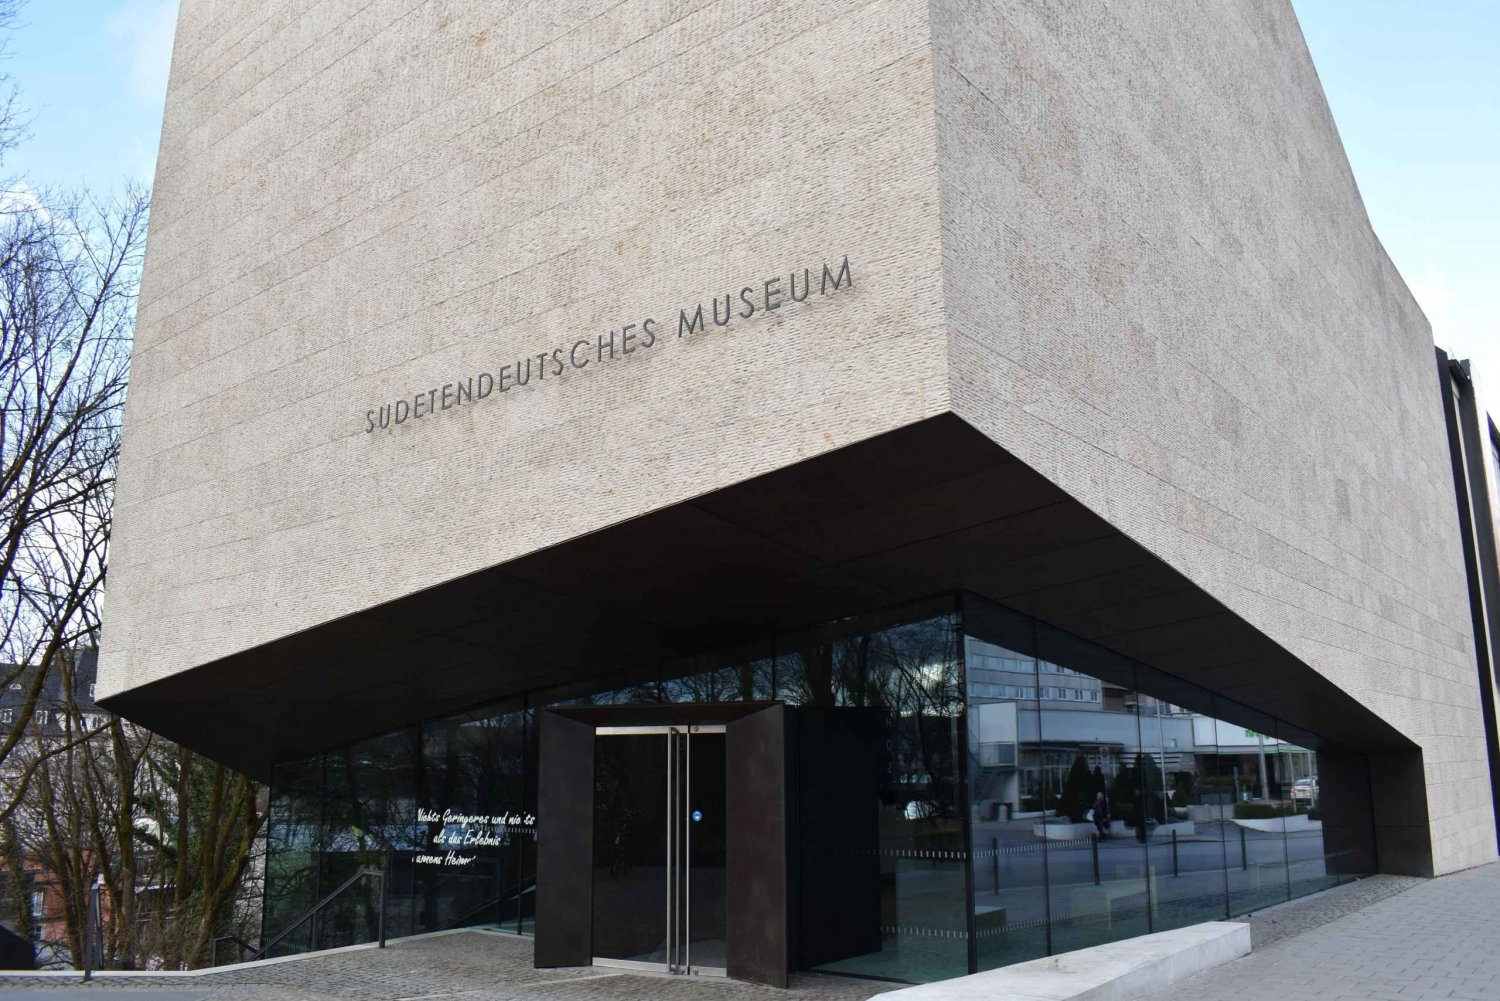 Guidet tur gennem det sudetertyske museum